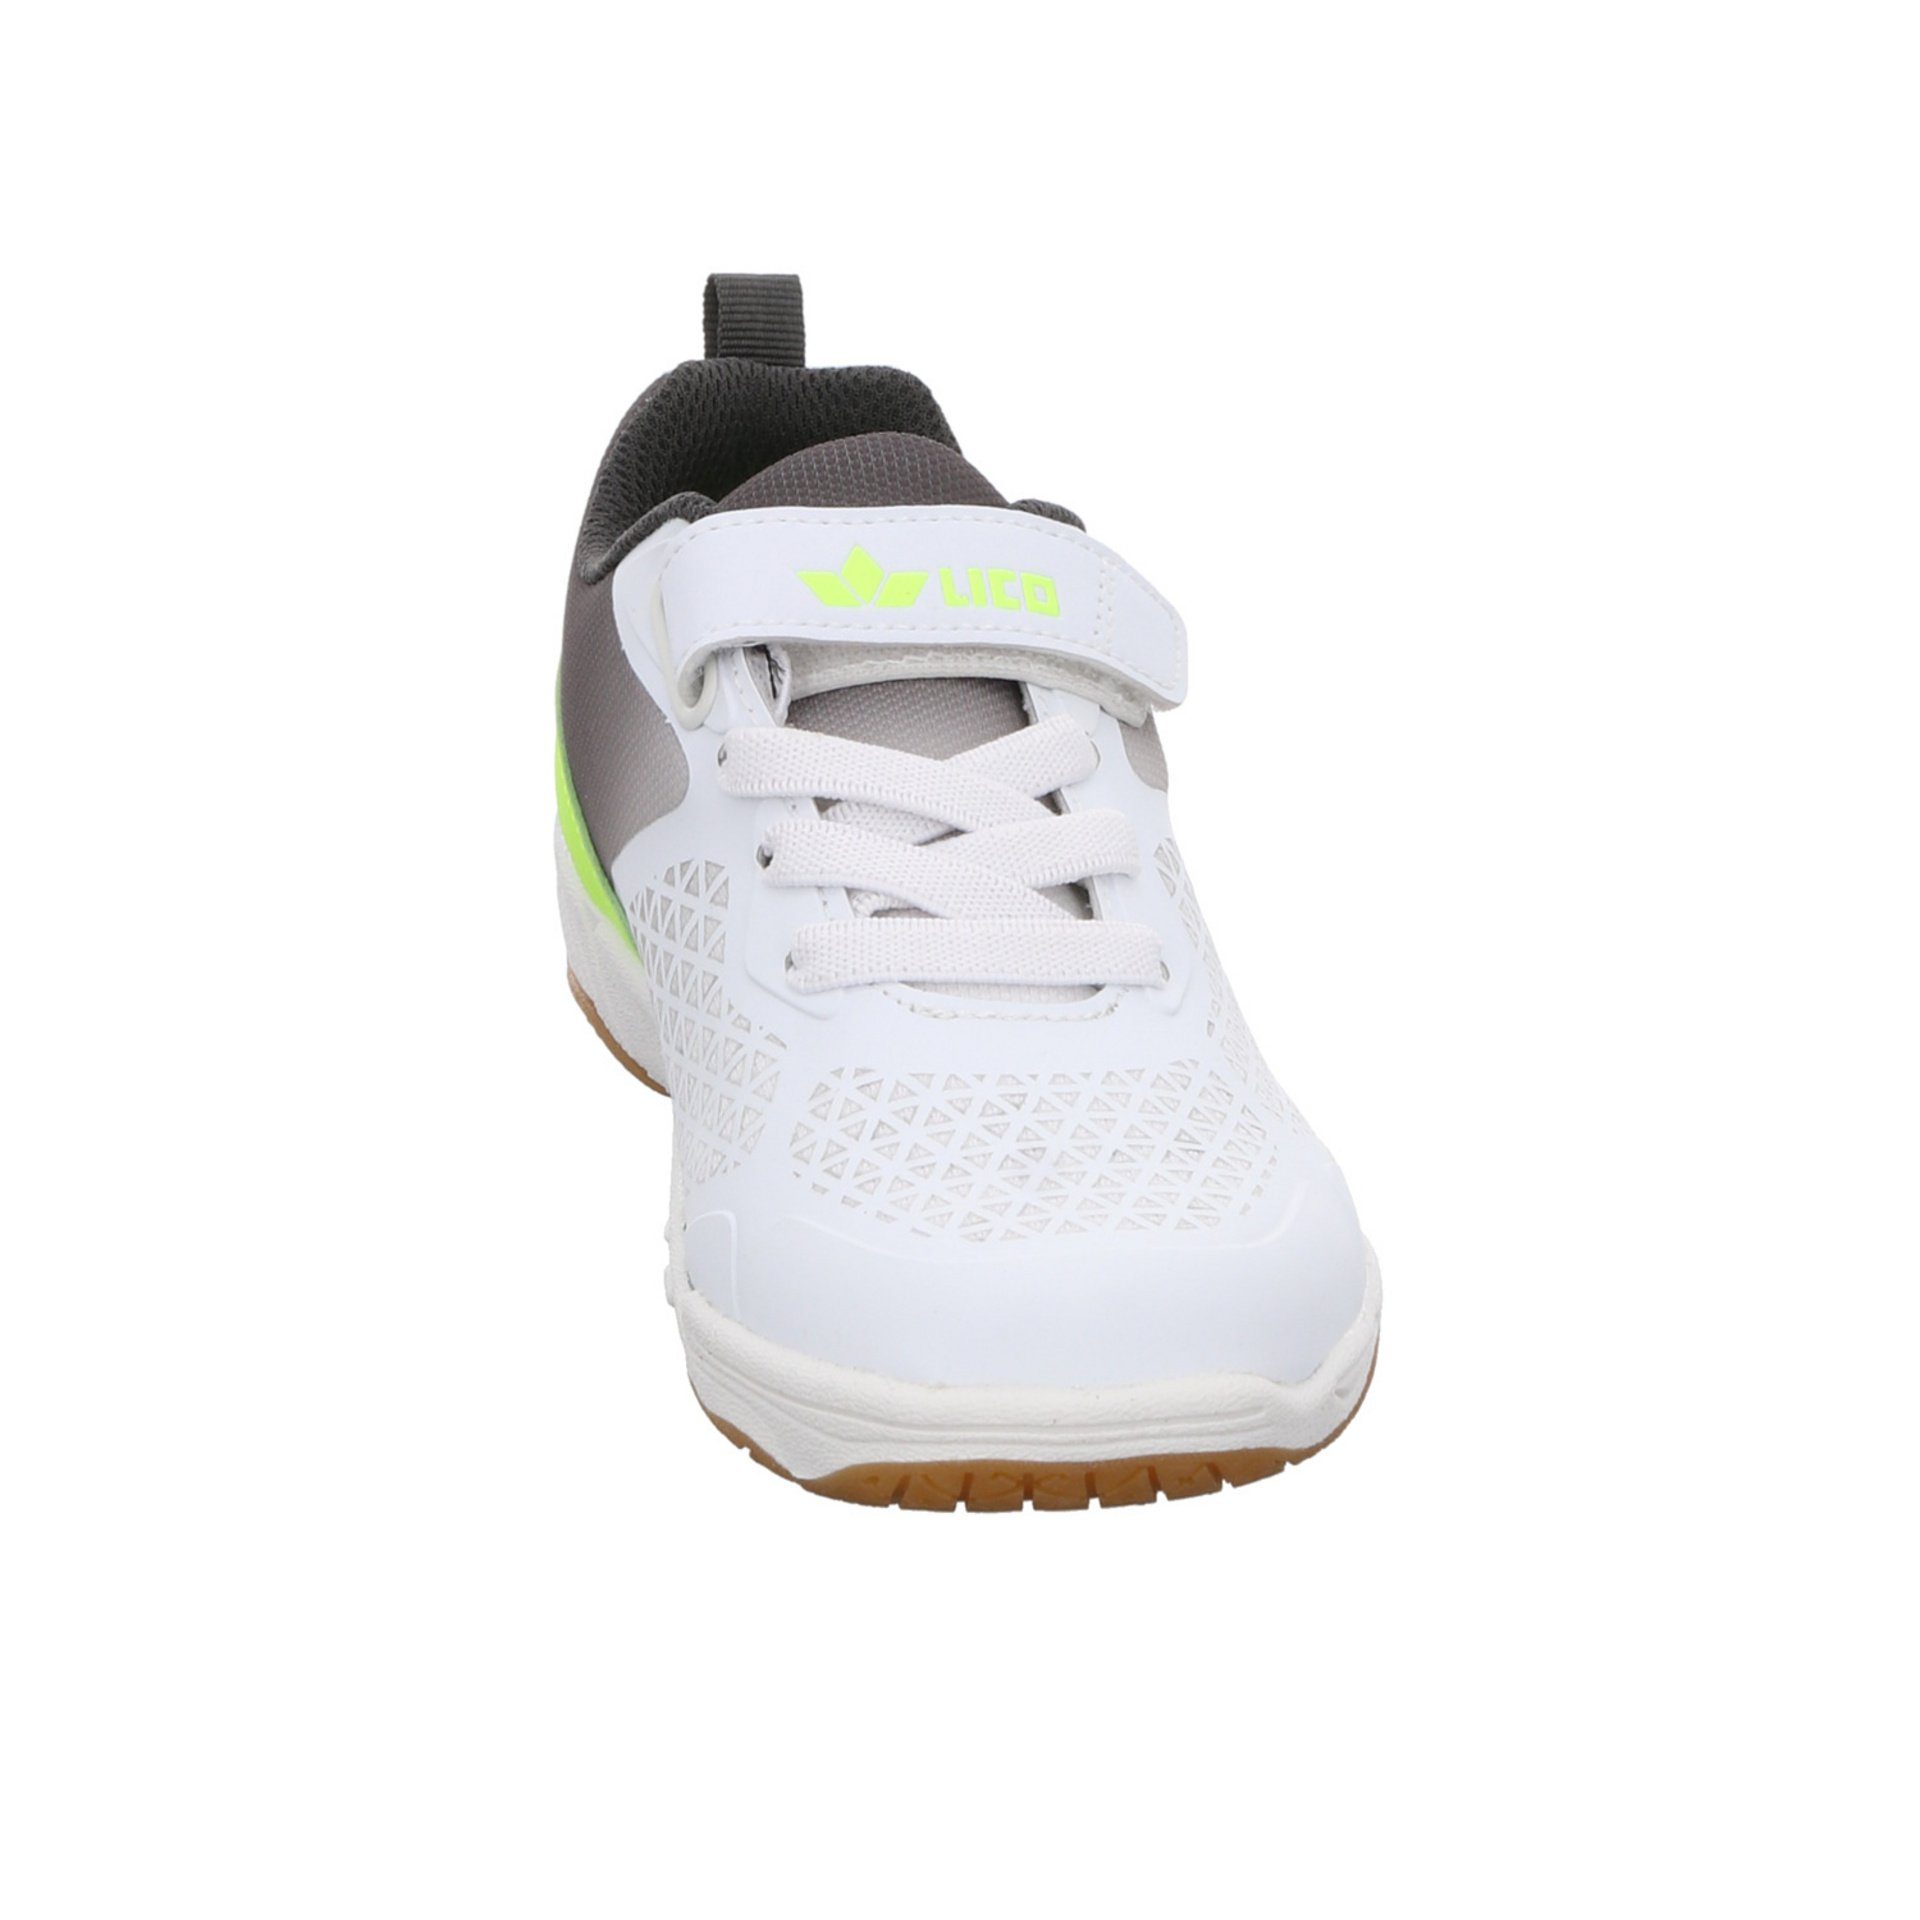 Sneaker Synthetikkombination weiss/grau/lemon Synthetikkombination Lico Kit gemustert VS Sneaker